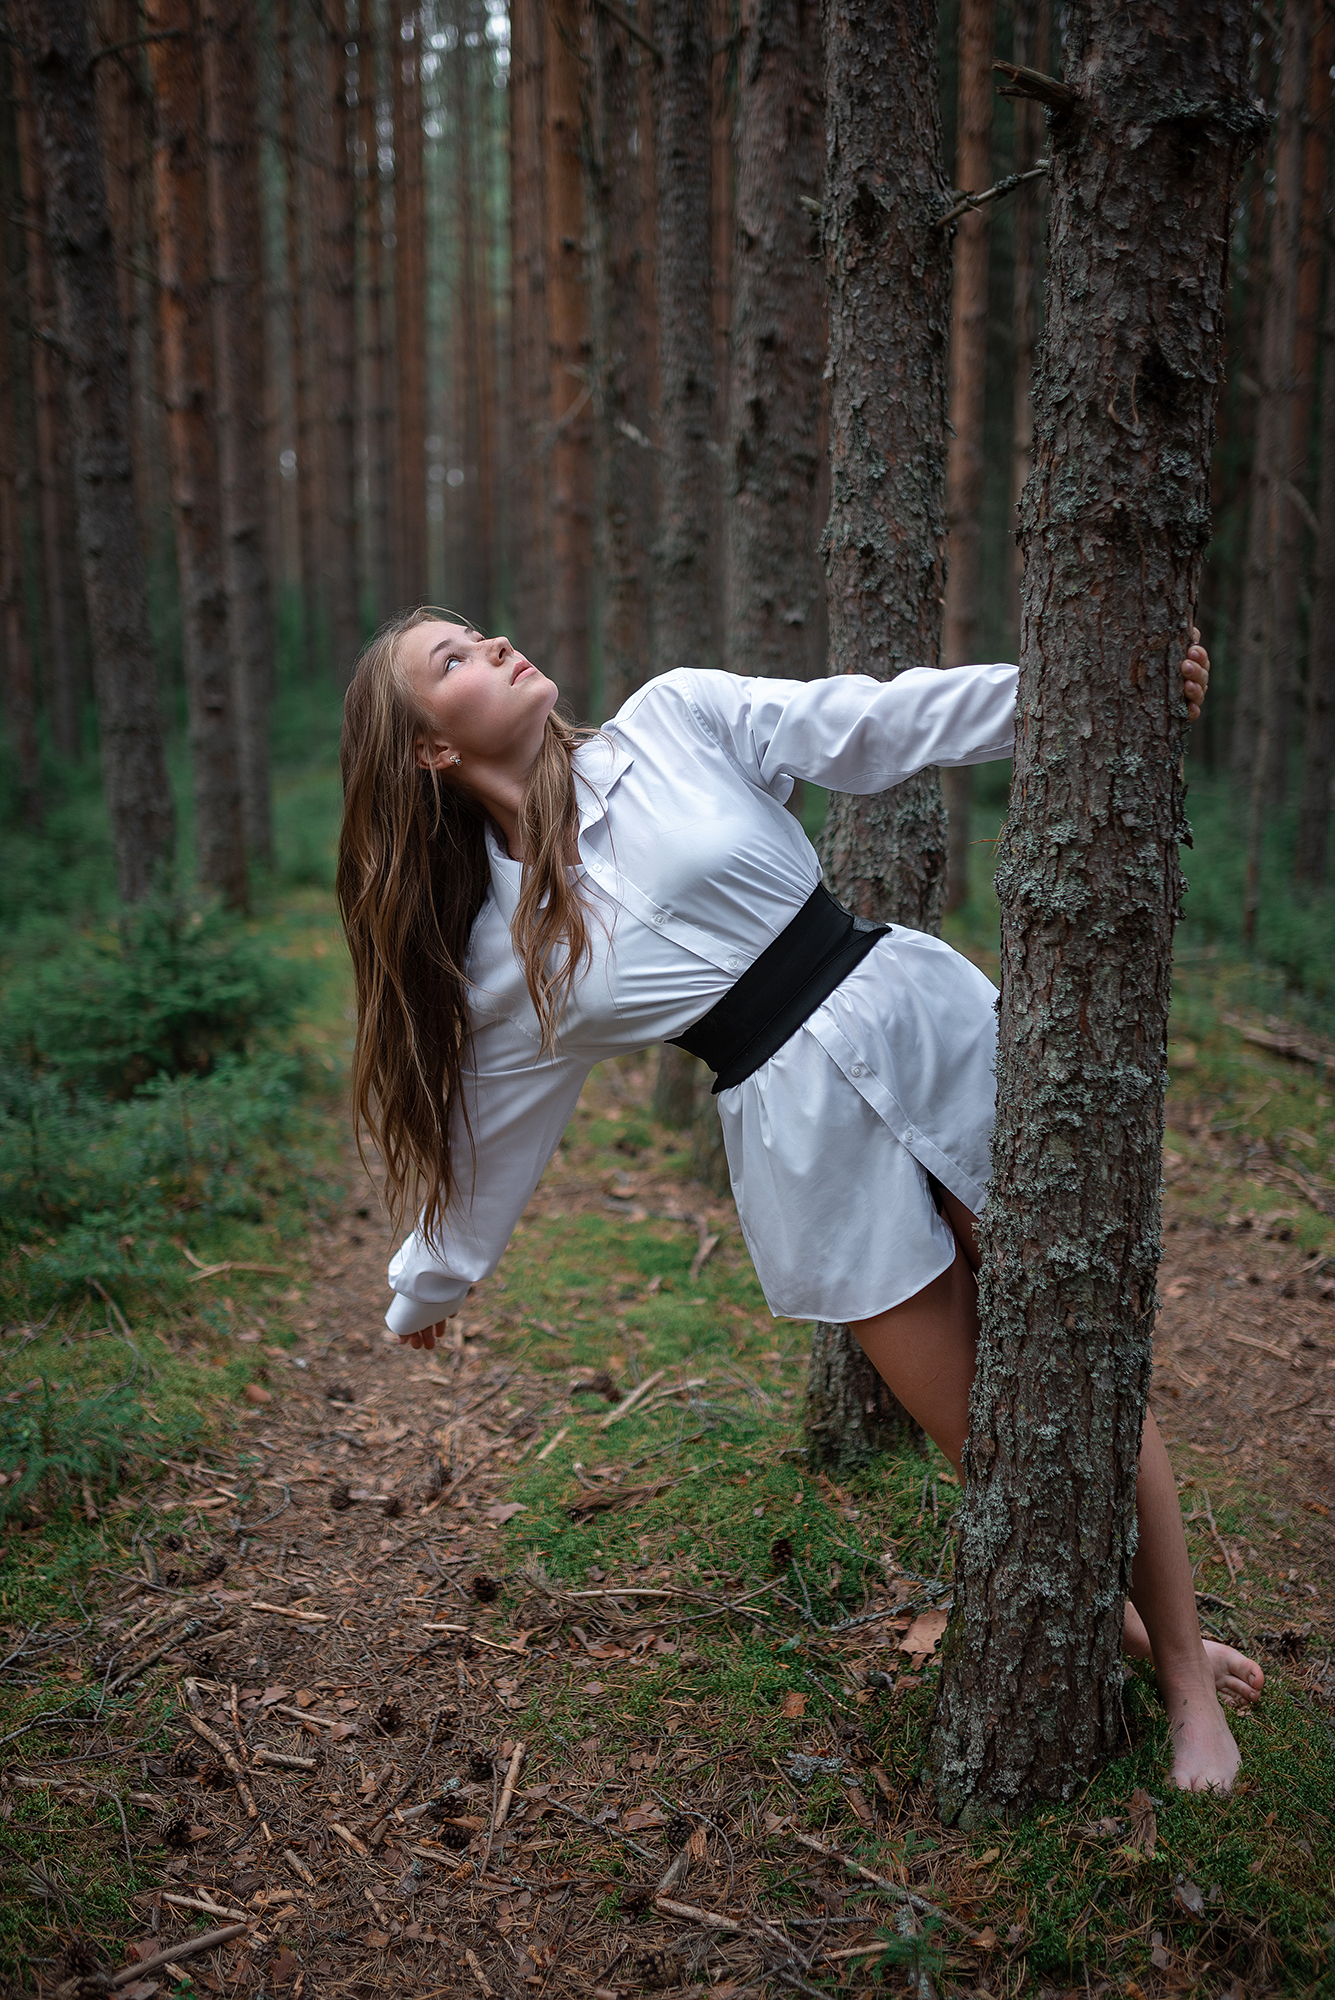 Фото Девушка лесу, более 99 качественных бесплатных стоковых фото